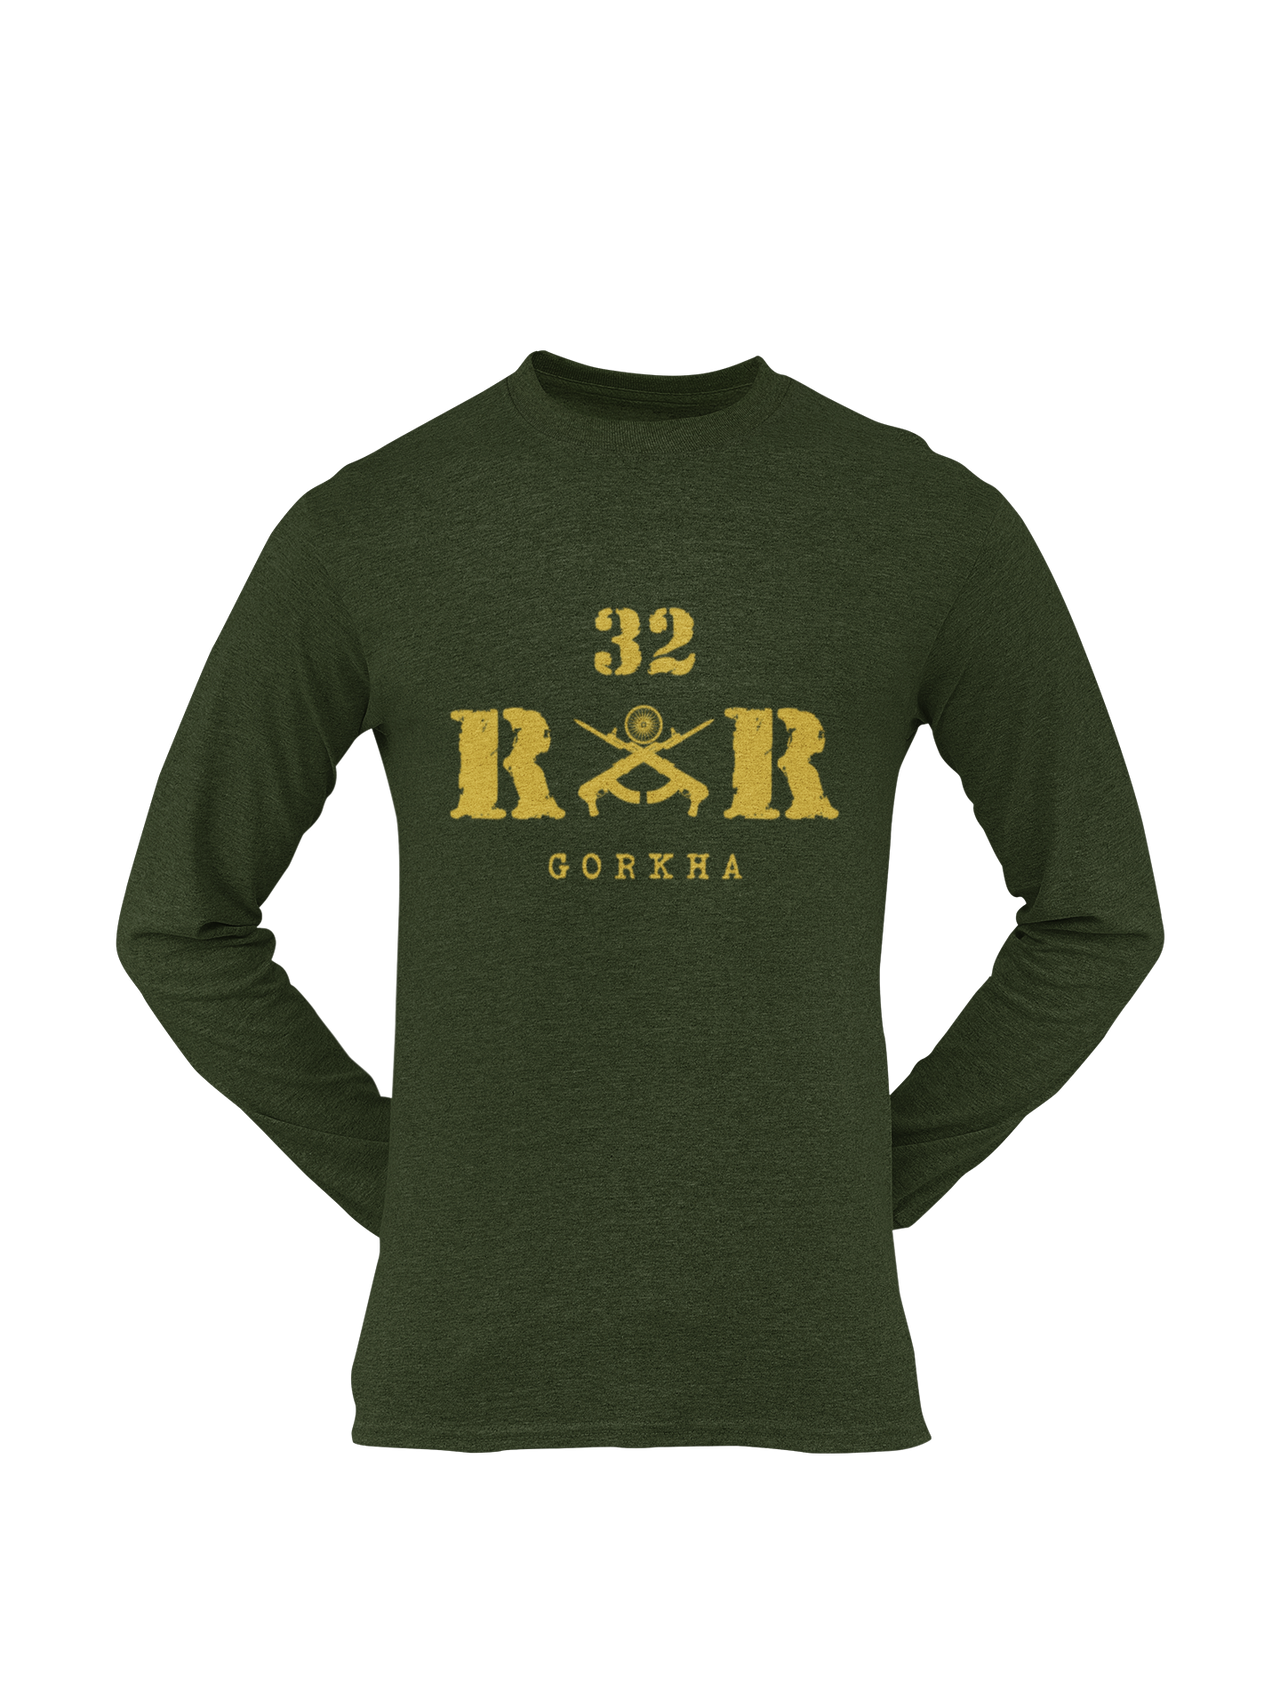 Rashtriya Rifles T-shirt - 32 RR Gorkha (Men)